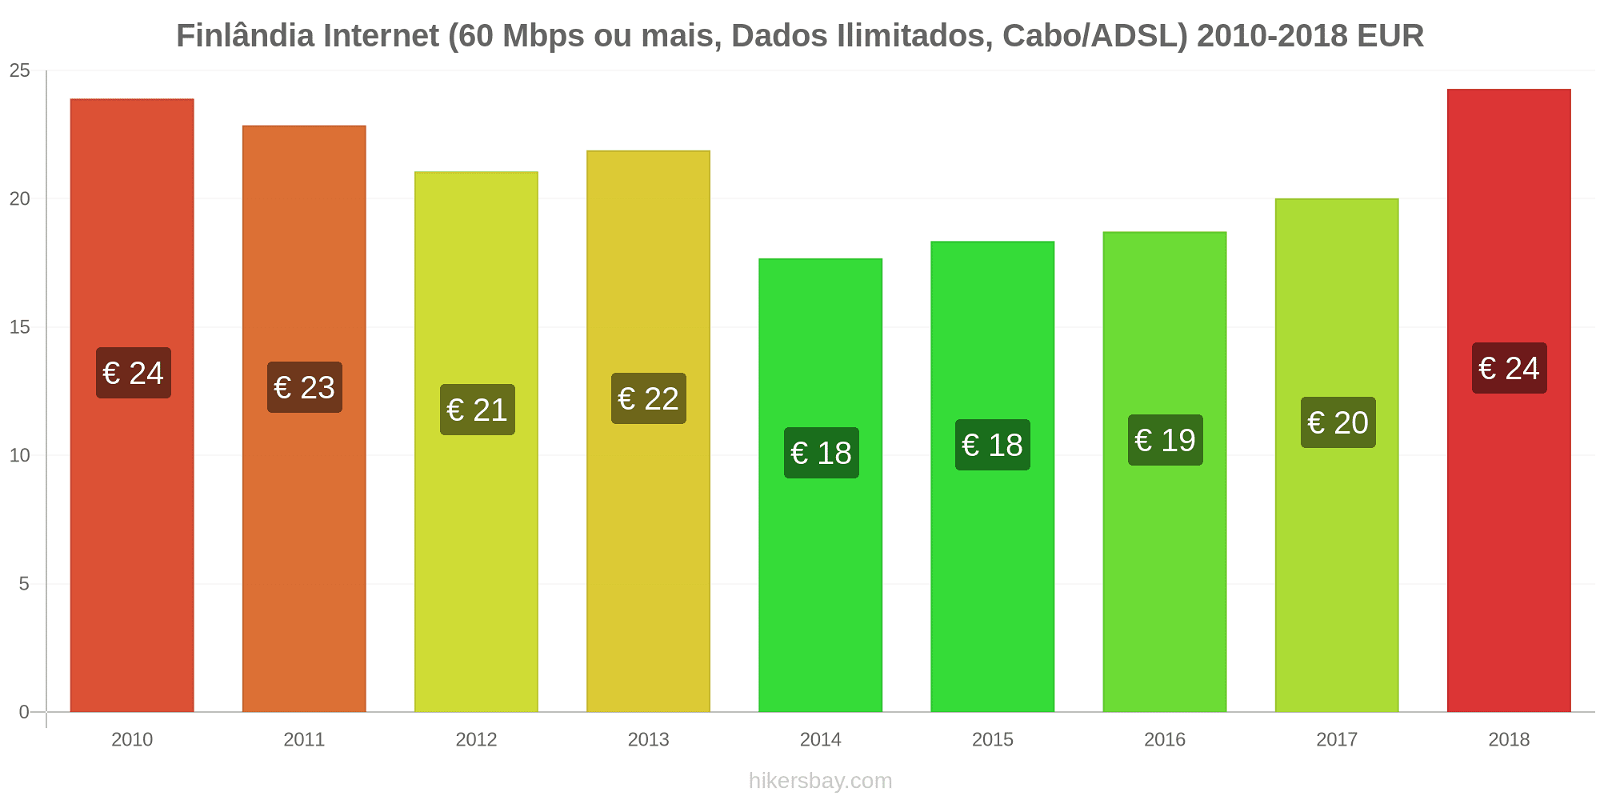 Finlândia mudanças de preços Internet (60 Mbps ou mais, dados ilimitados, cabo/ADSL) hikersbay.com